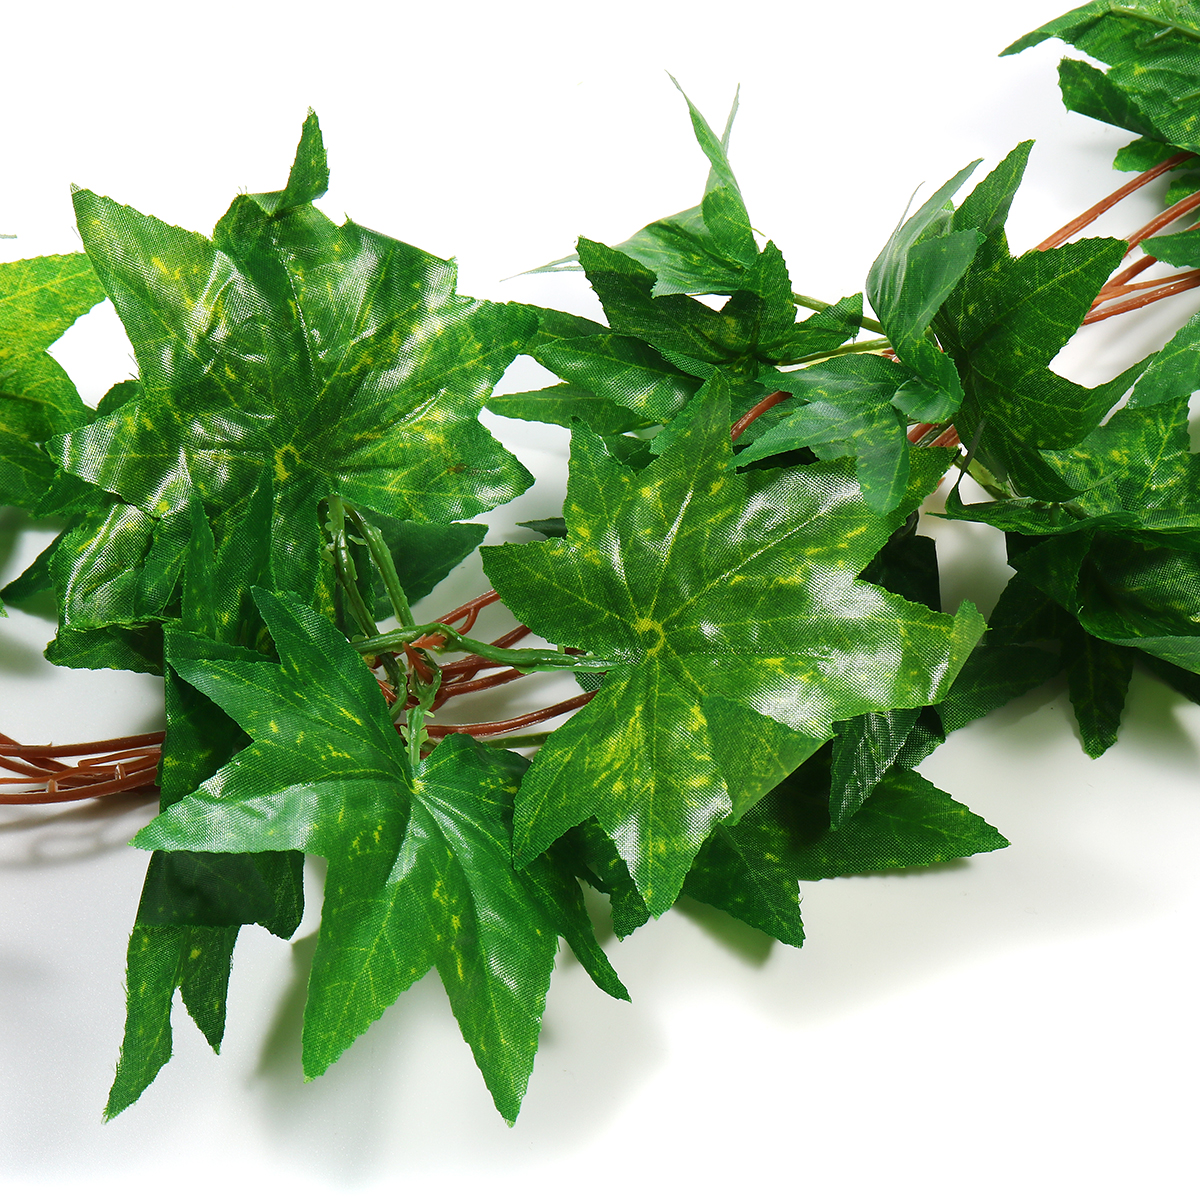 GreenRed-Maple-Leaf-Artificial-Vine-Garland-Foliage-Plant-Wedding-Party-Decor-1714788-9